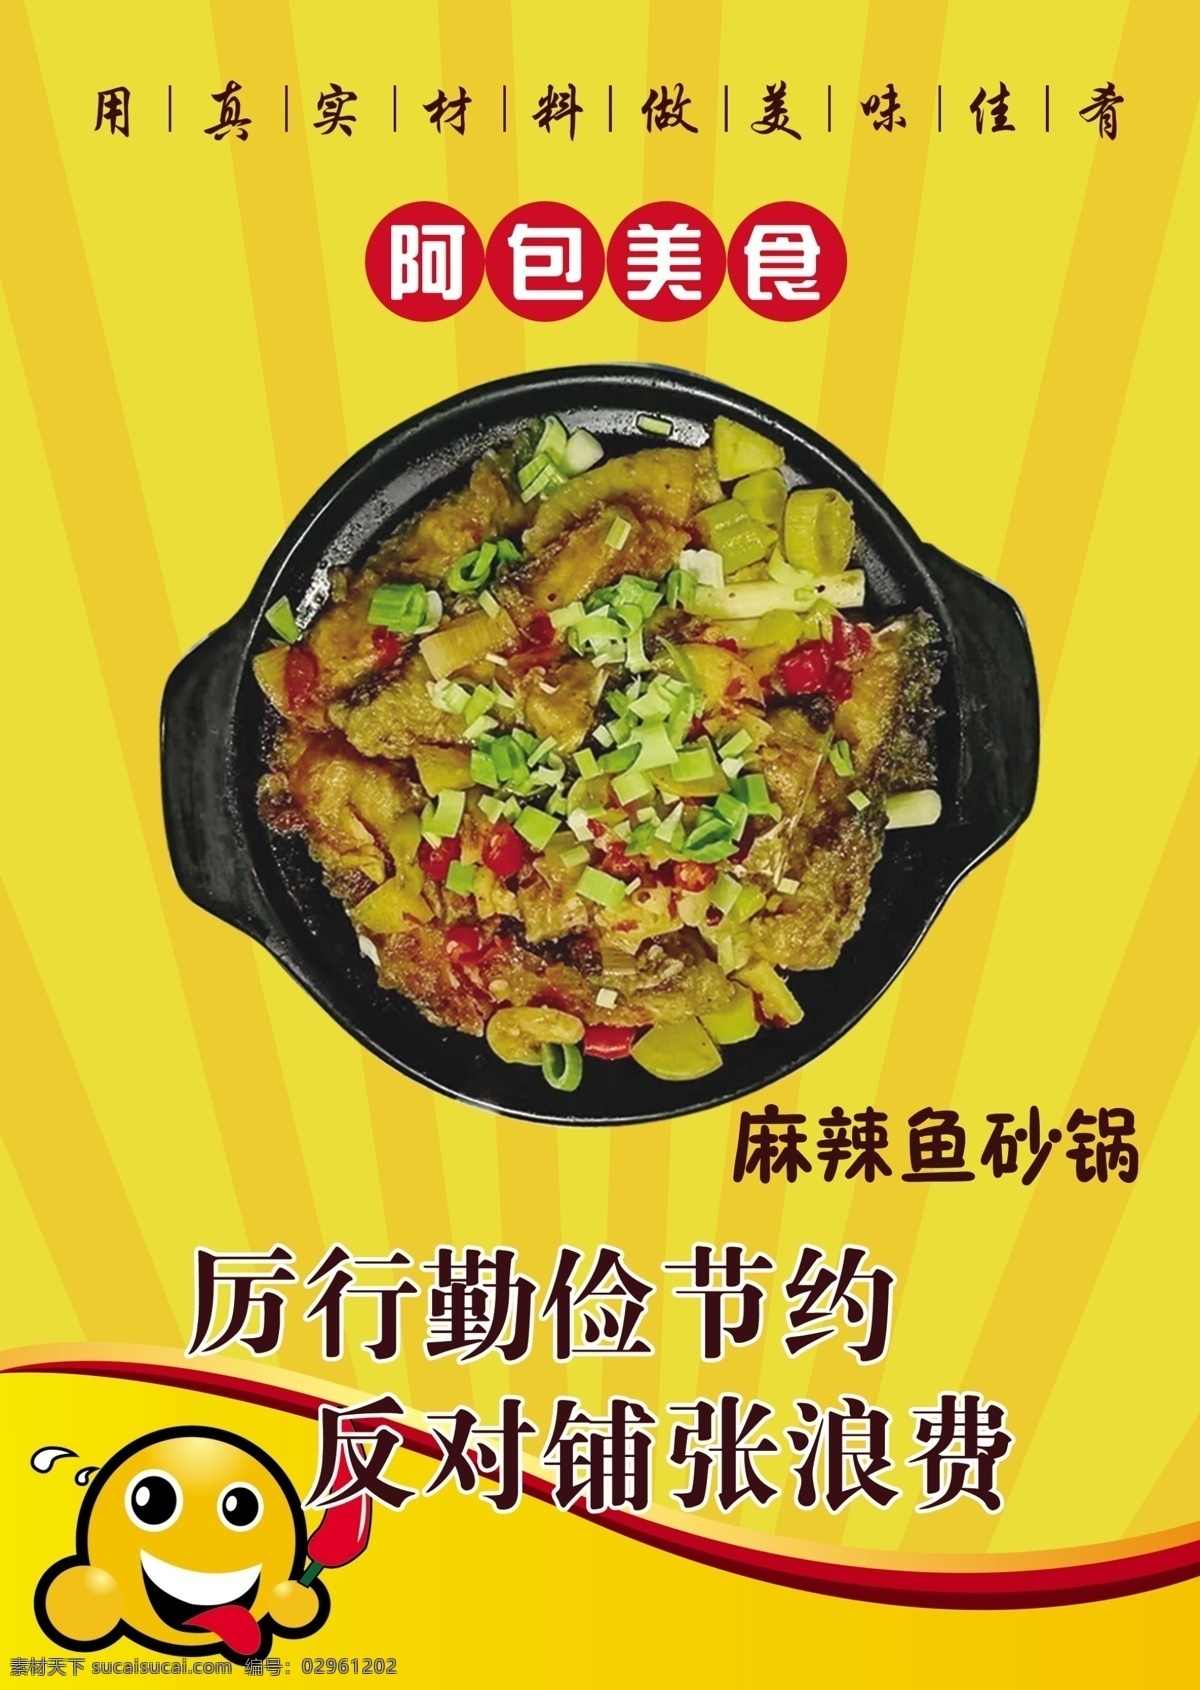 阿包美食 黄色海报 黄色展板 勤俭节约 鱼砂锅 美食广告